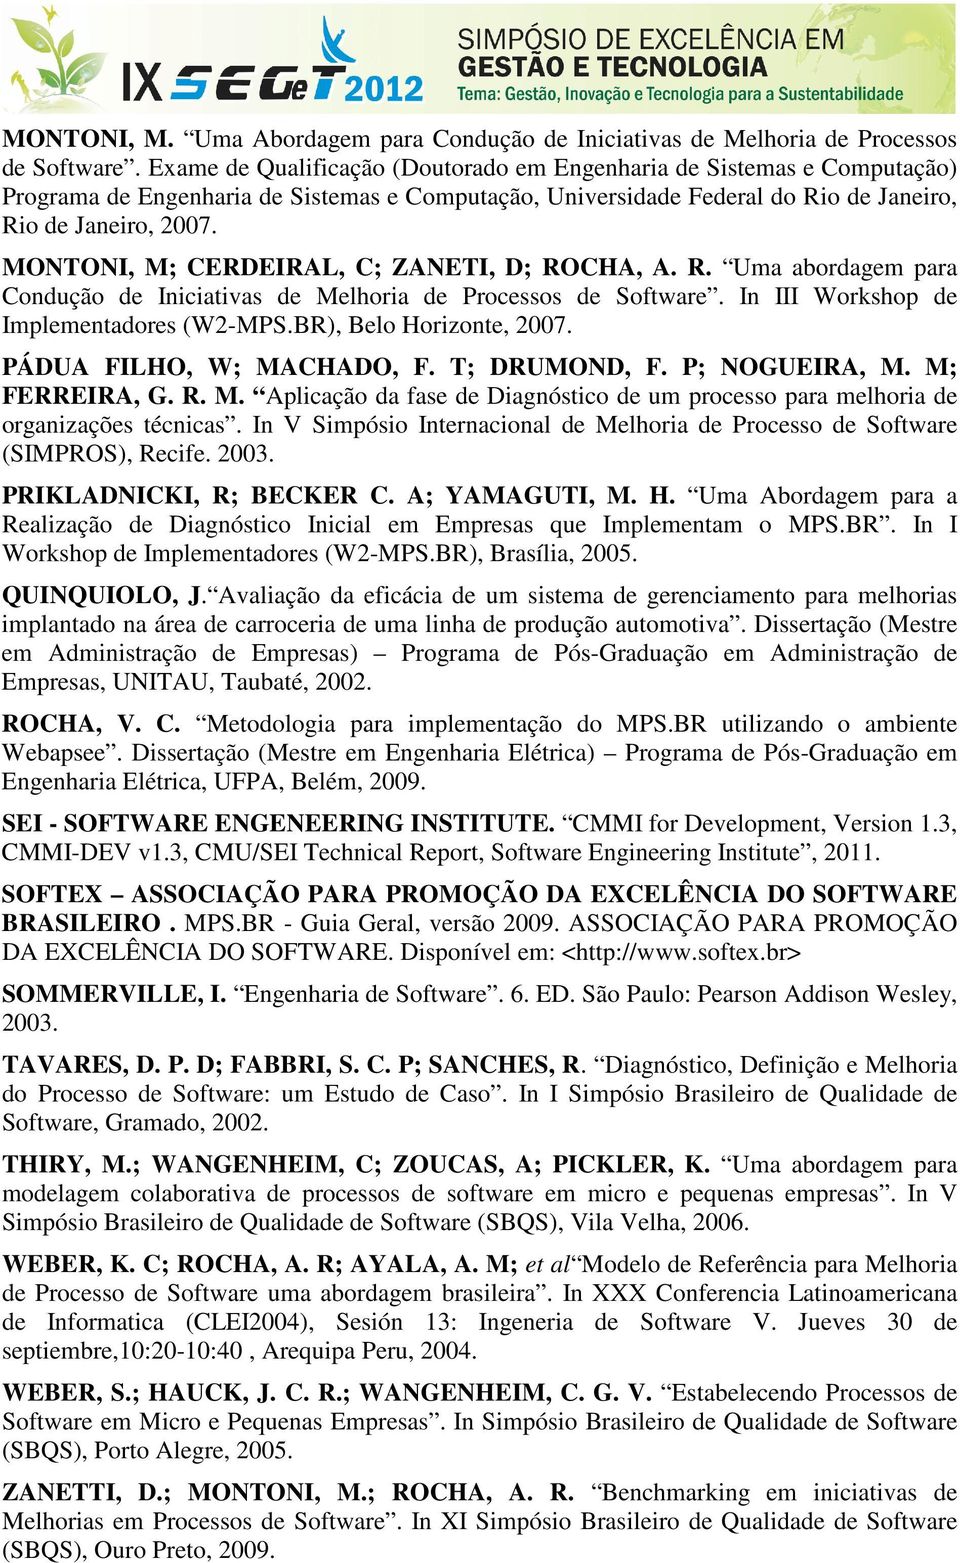 MONTONI, M; CERDEIRAL, C; ZANETI, D; ROCHA, A. R. Uma abordagem para Condução de Iniciativas de Melhoria de Processos de Software. In III Workshop de Implementadores (W2-MPS.BR), Belo Horizonte, 2007.